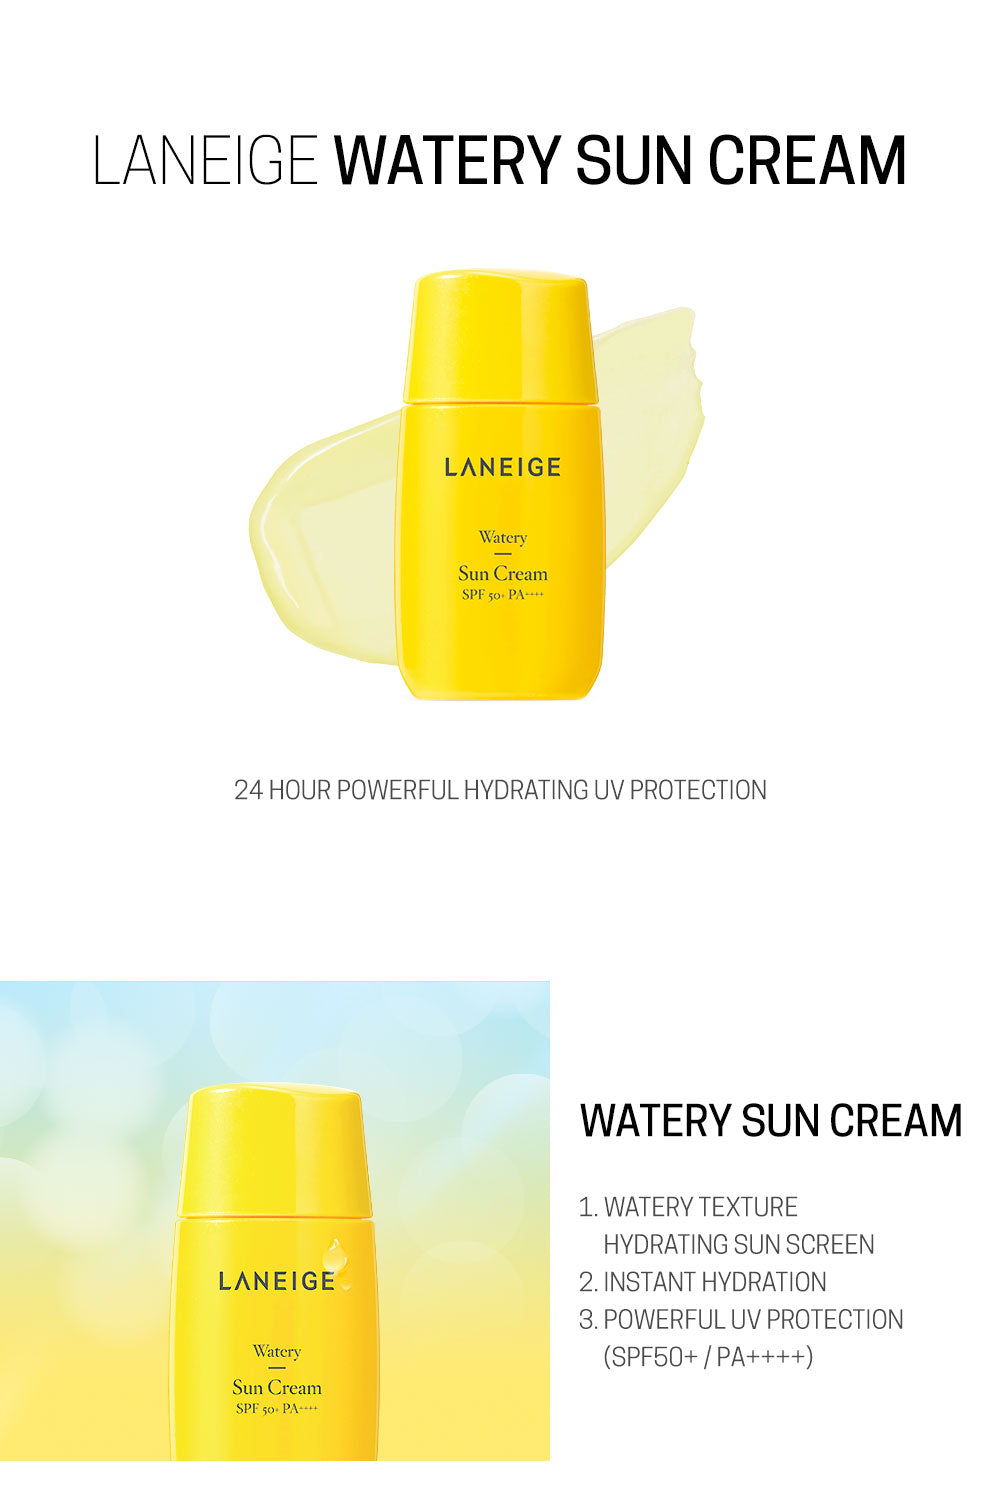 laneige-watery-sun-cream-1.jpg